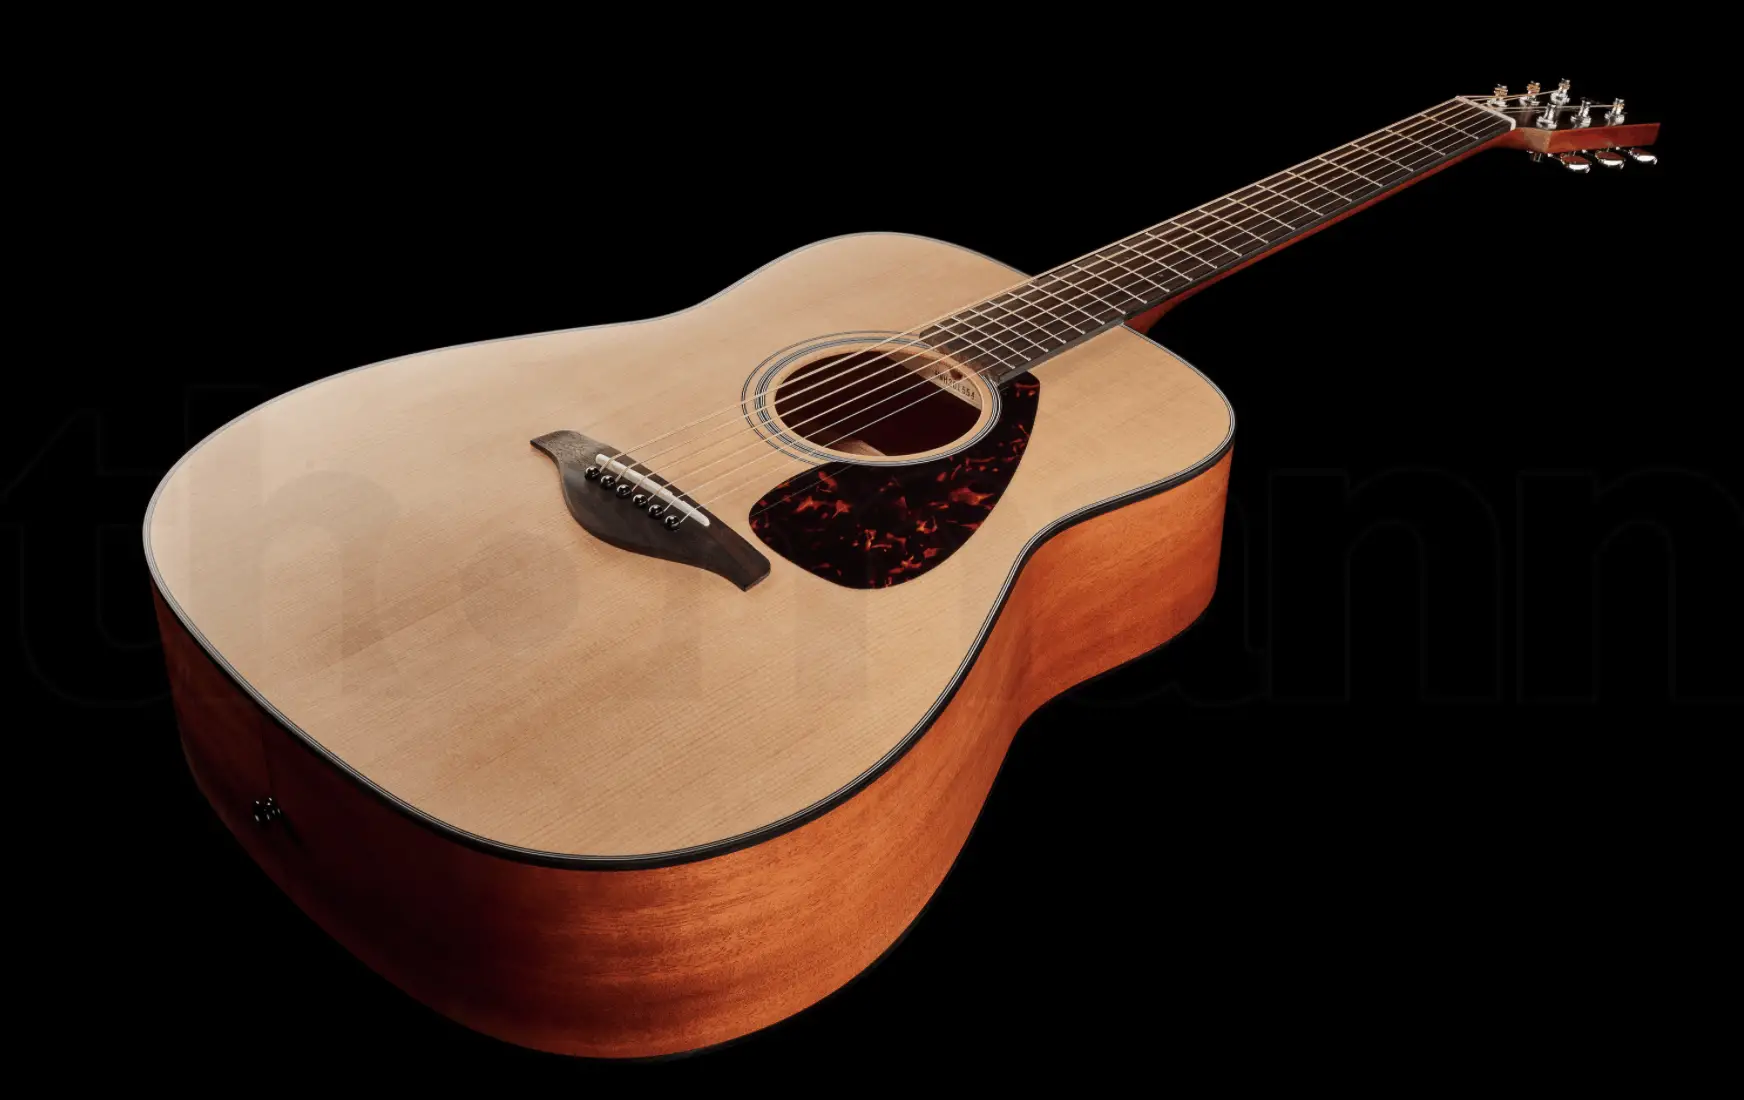 Mellor guitarra folk para principiantes Yamaha FG800M